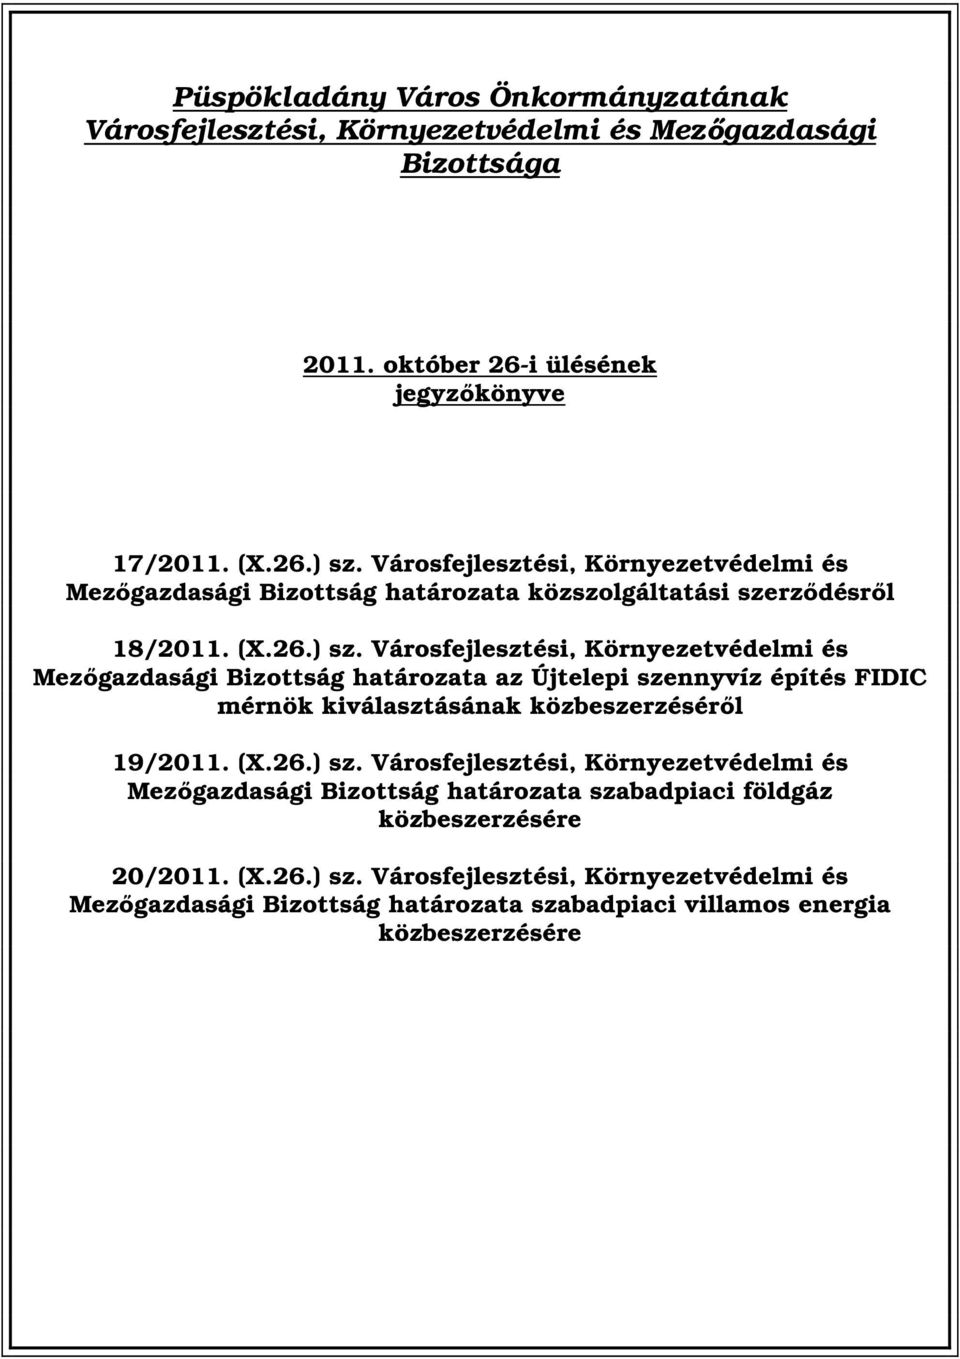 Városfejlesztési, Környezetvédelmi és Mezőgazdasági Bizottság határozata az Újtelepi szennyvíz építés FIDIC mérnök kiválasztásának közbeszerzéséről 19/2011. (X.26.) sz.